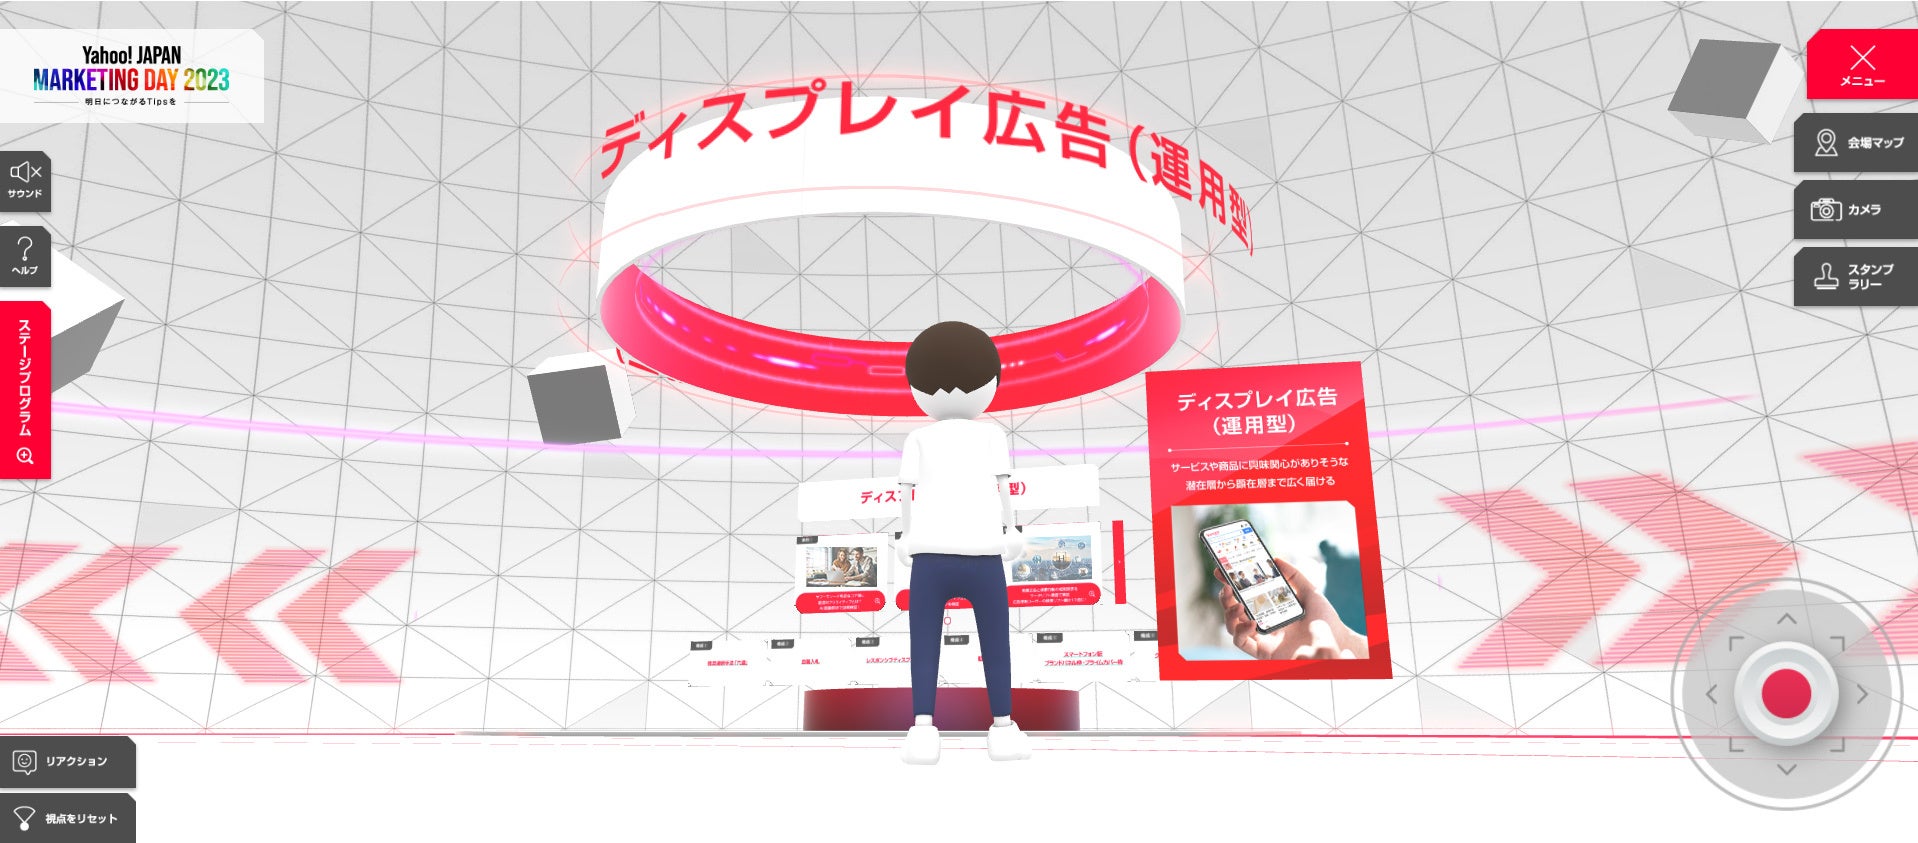 『Yahoo! JAPAN MARKETING DAY 2023』で使用される専用バーチャル空間をアクアスターが制作。メインステージや展示コンテンツ、アバター、スタンプラリーを仮想空間仕立てに。のサブ画像1